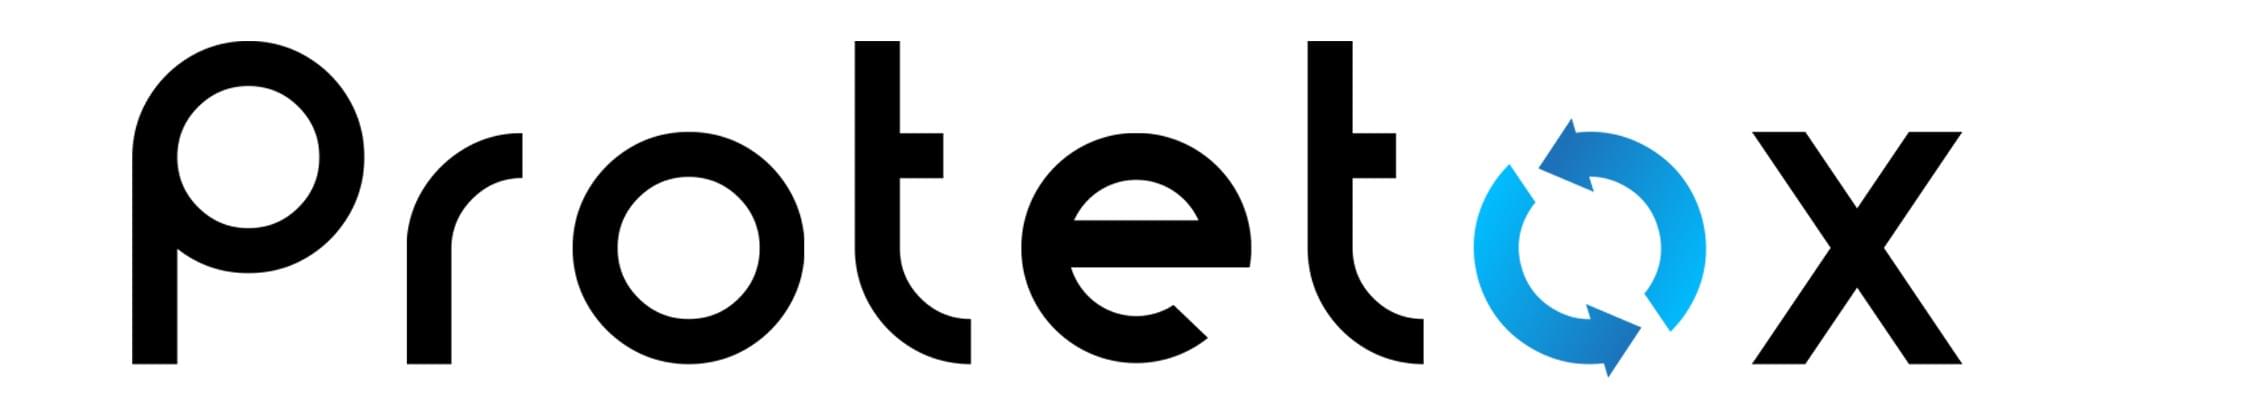 Protetox Logo.1